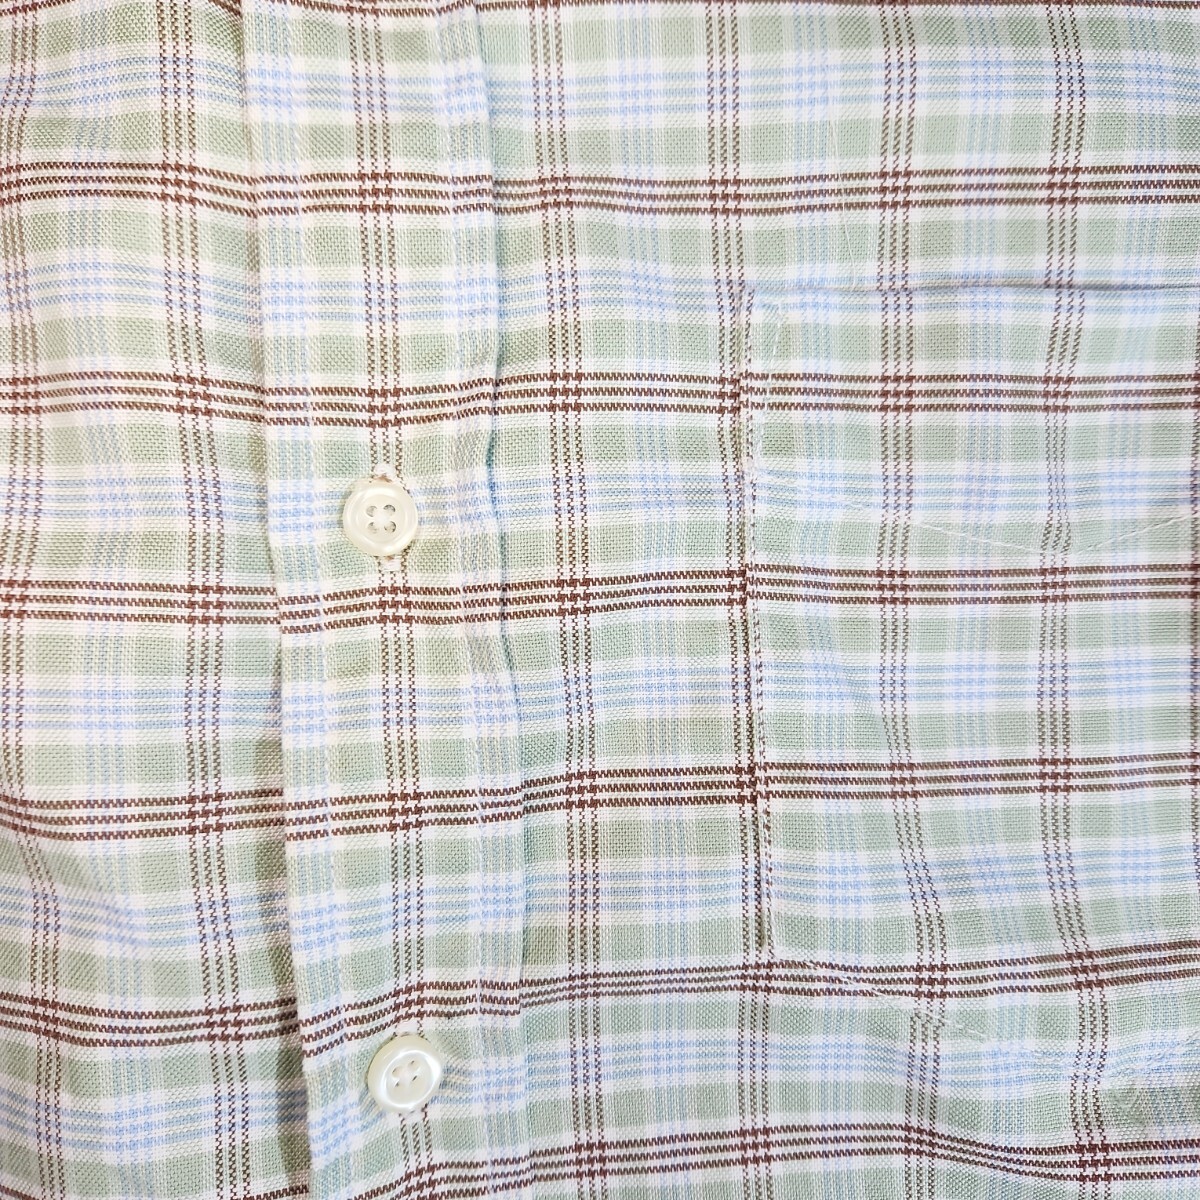 pbi スーピマコットン100% オックスフォード長袖BDシャツ 表記サイズS チェック柄 ライトグリーン水色ブラウン白 83016_画像4